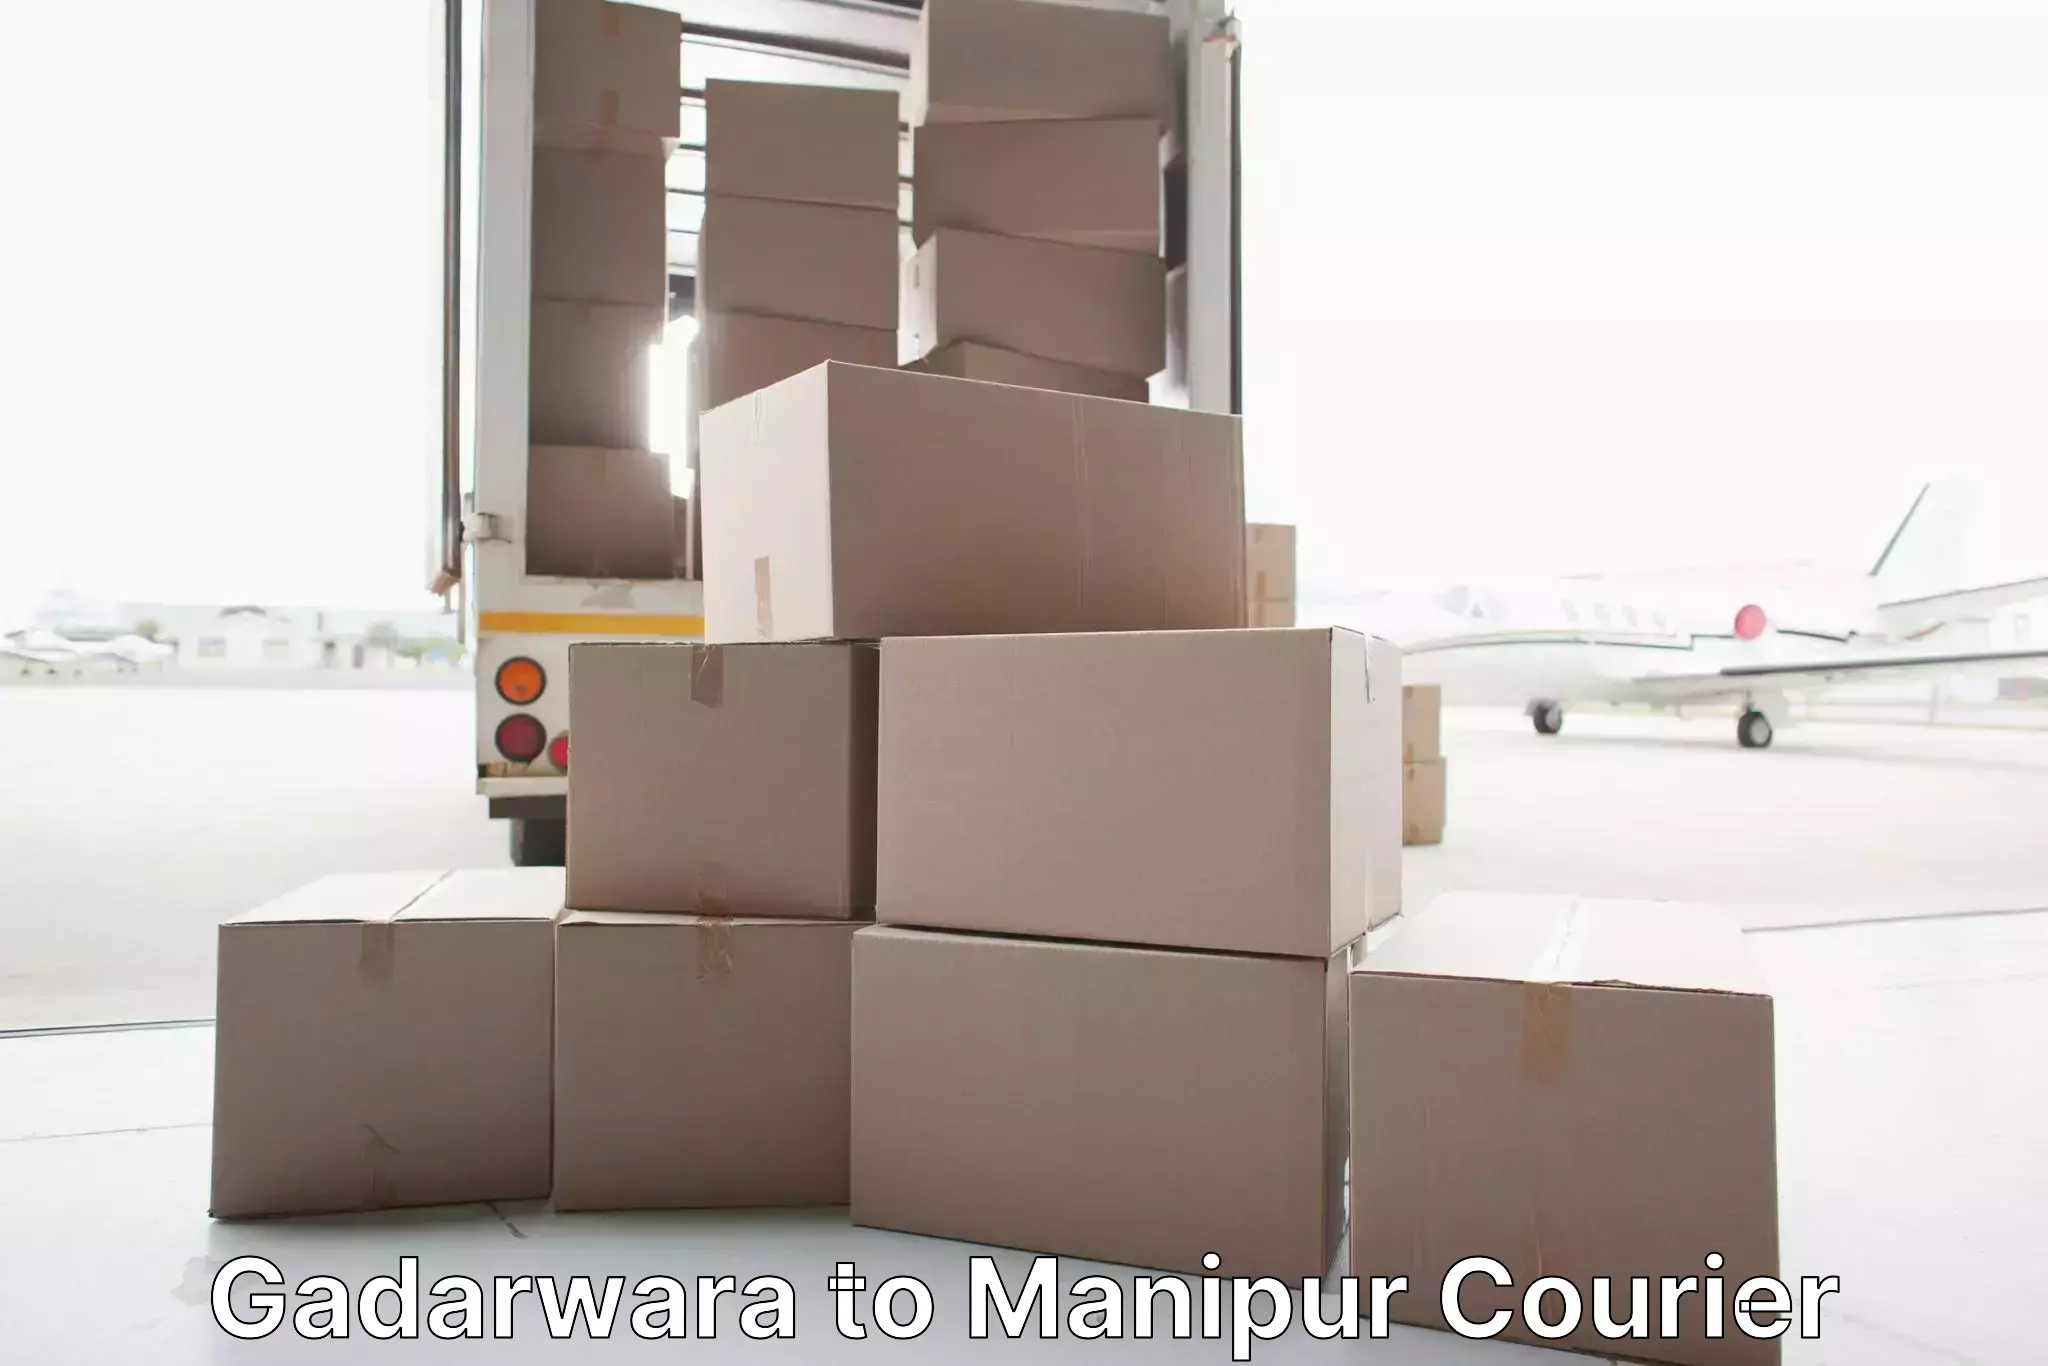 Comprehensive relocation services Gadarwara to NIT Manipur